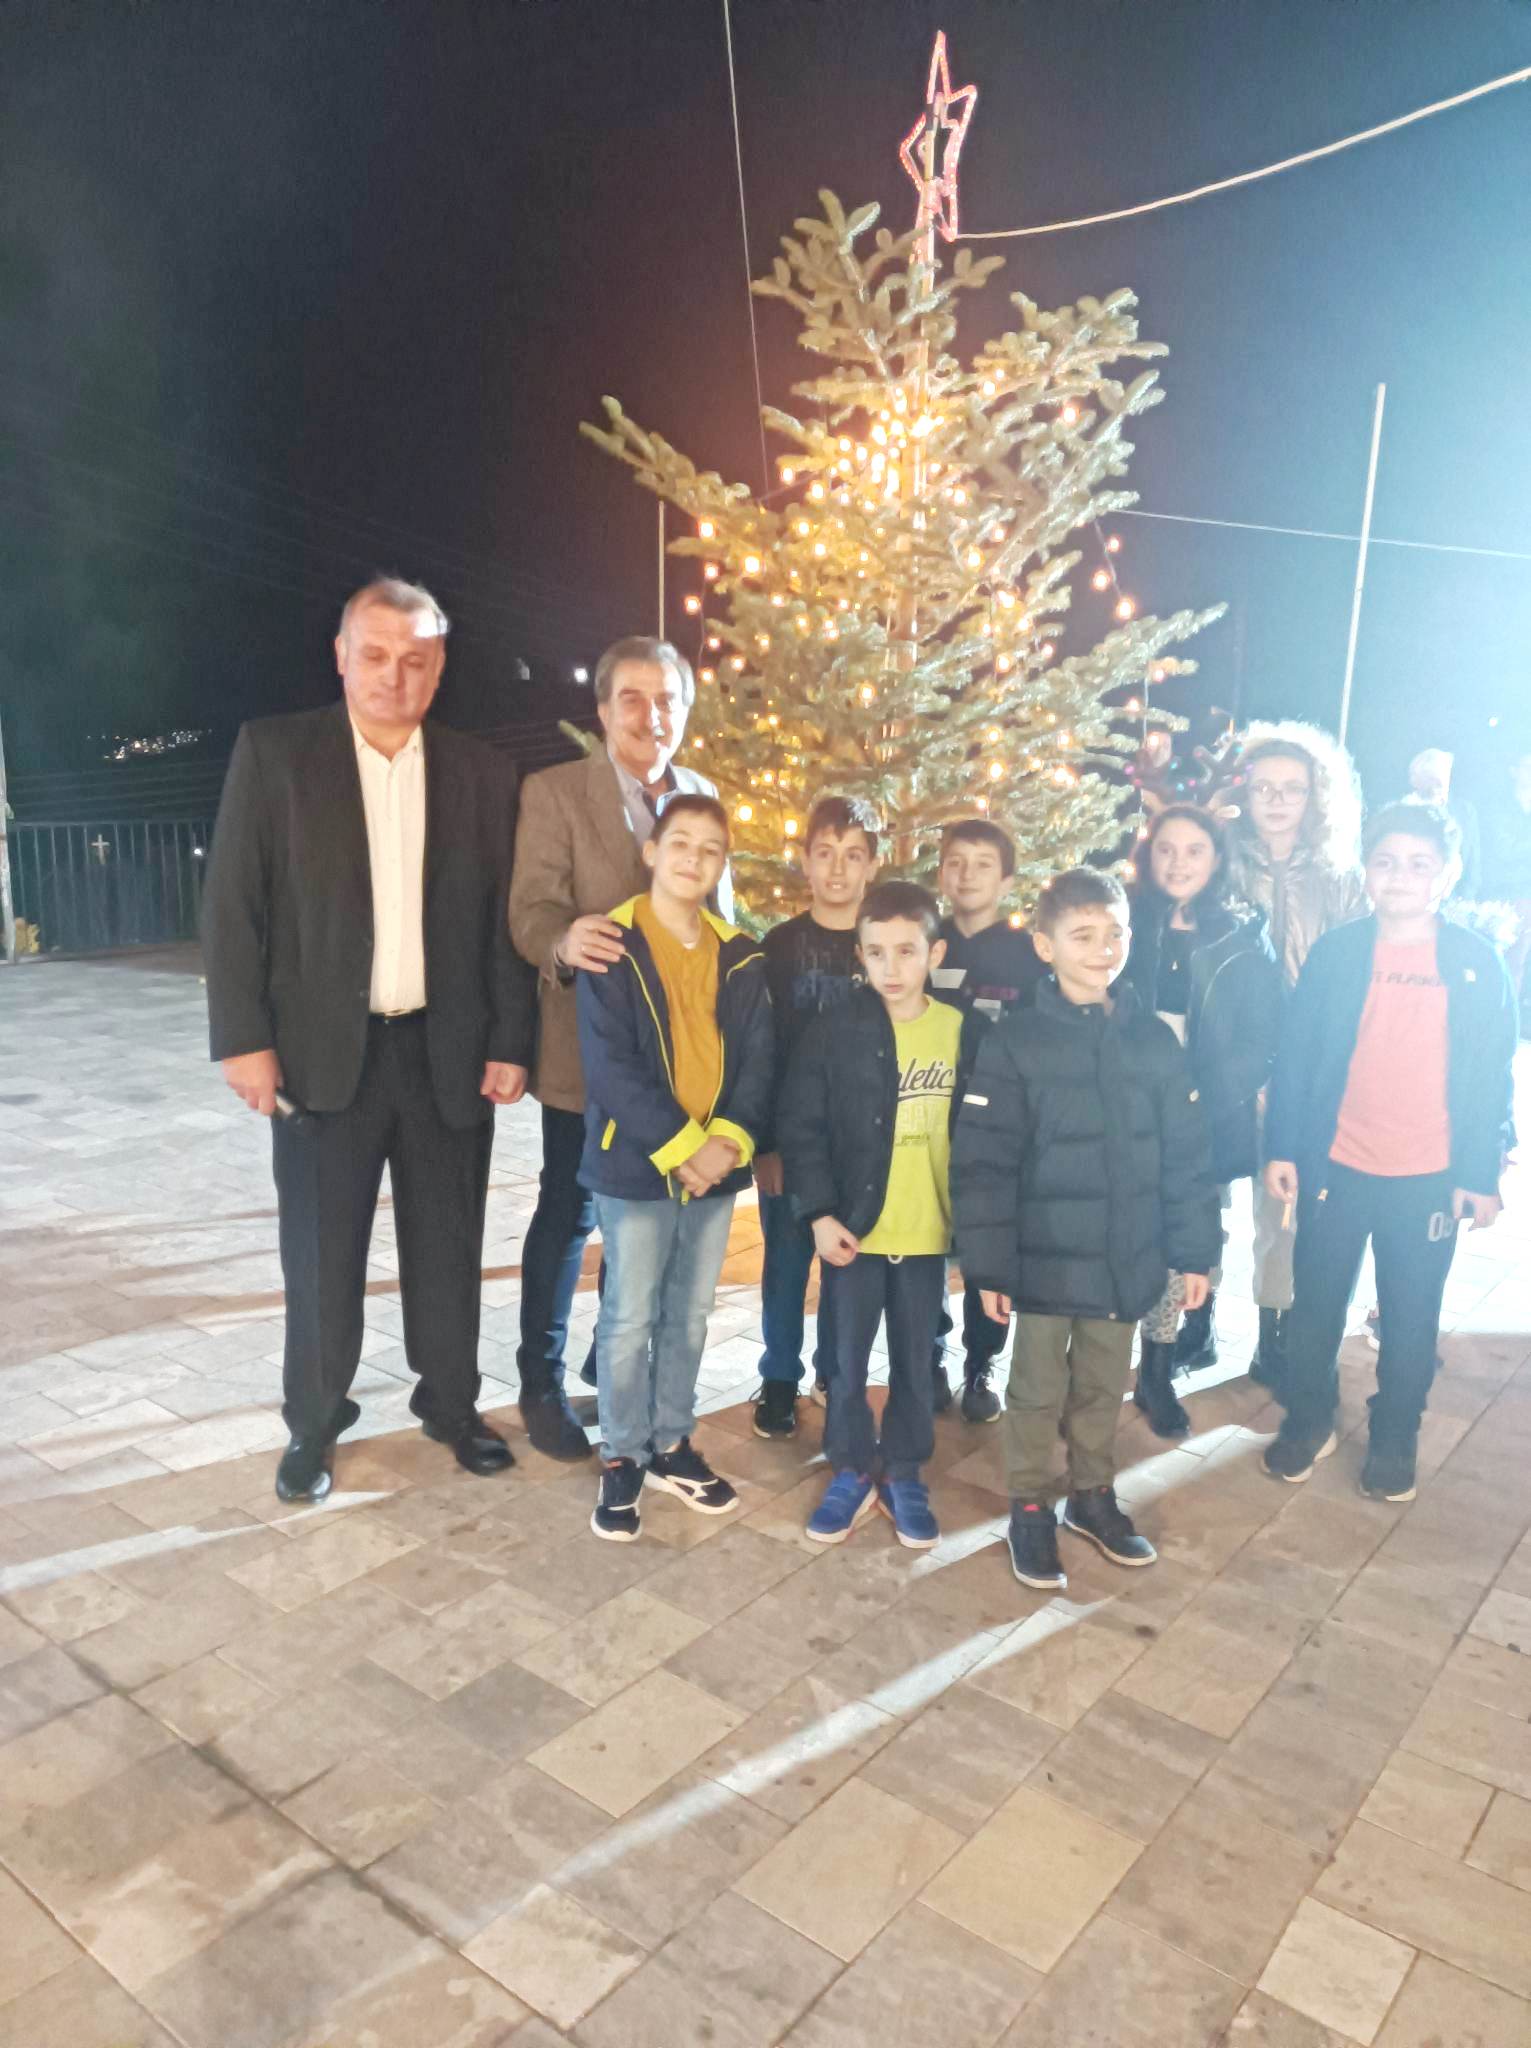 Άναψε το Χριστουγεννιάτικο δέντρο στο Μαλαντρένι με τραγούδια από τα παιδιά